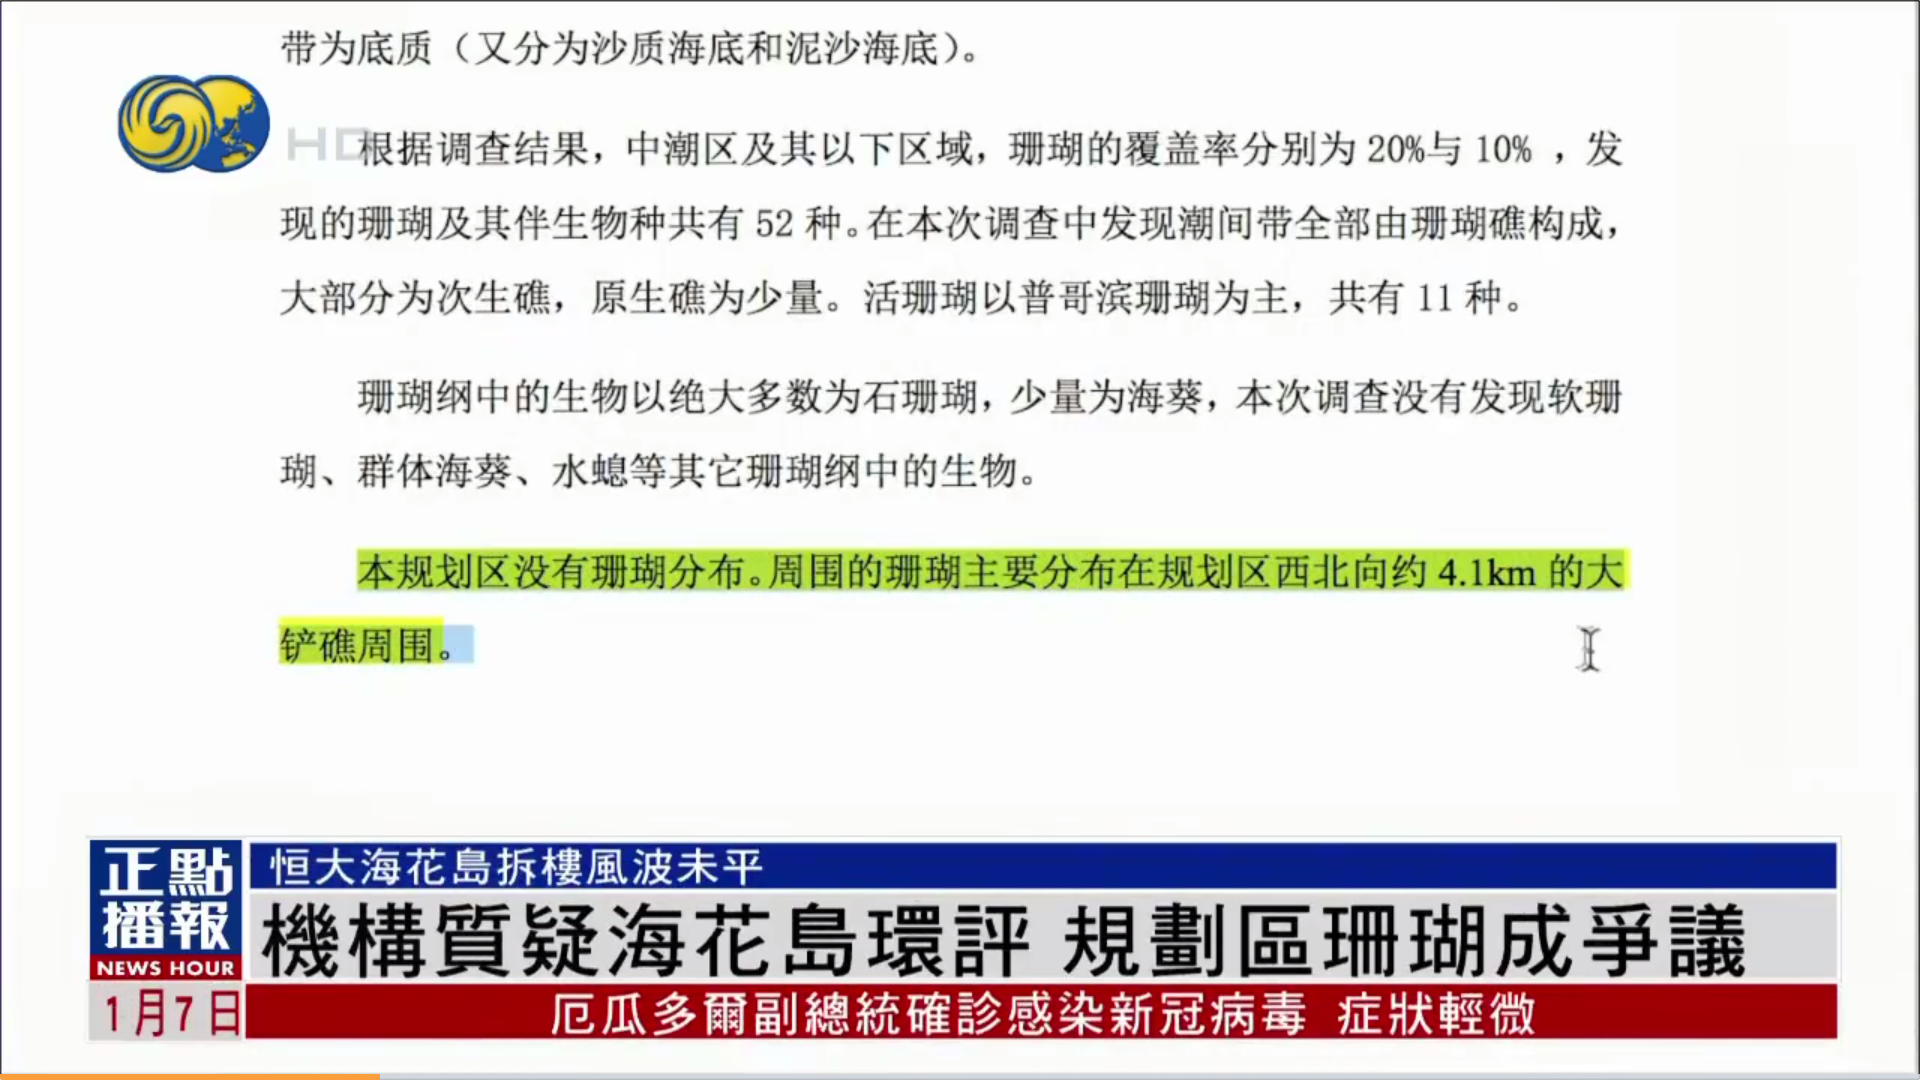 凤凰卫视关于恒大海花岛环评涉嫌造假事件的报道2.png